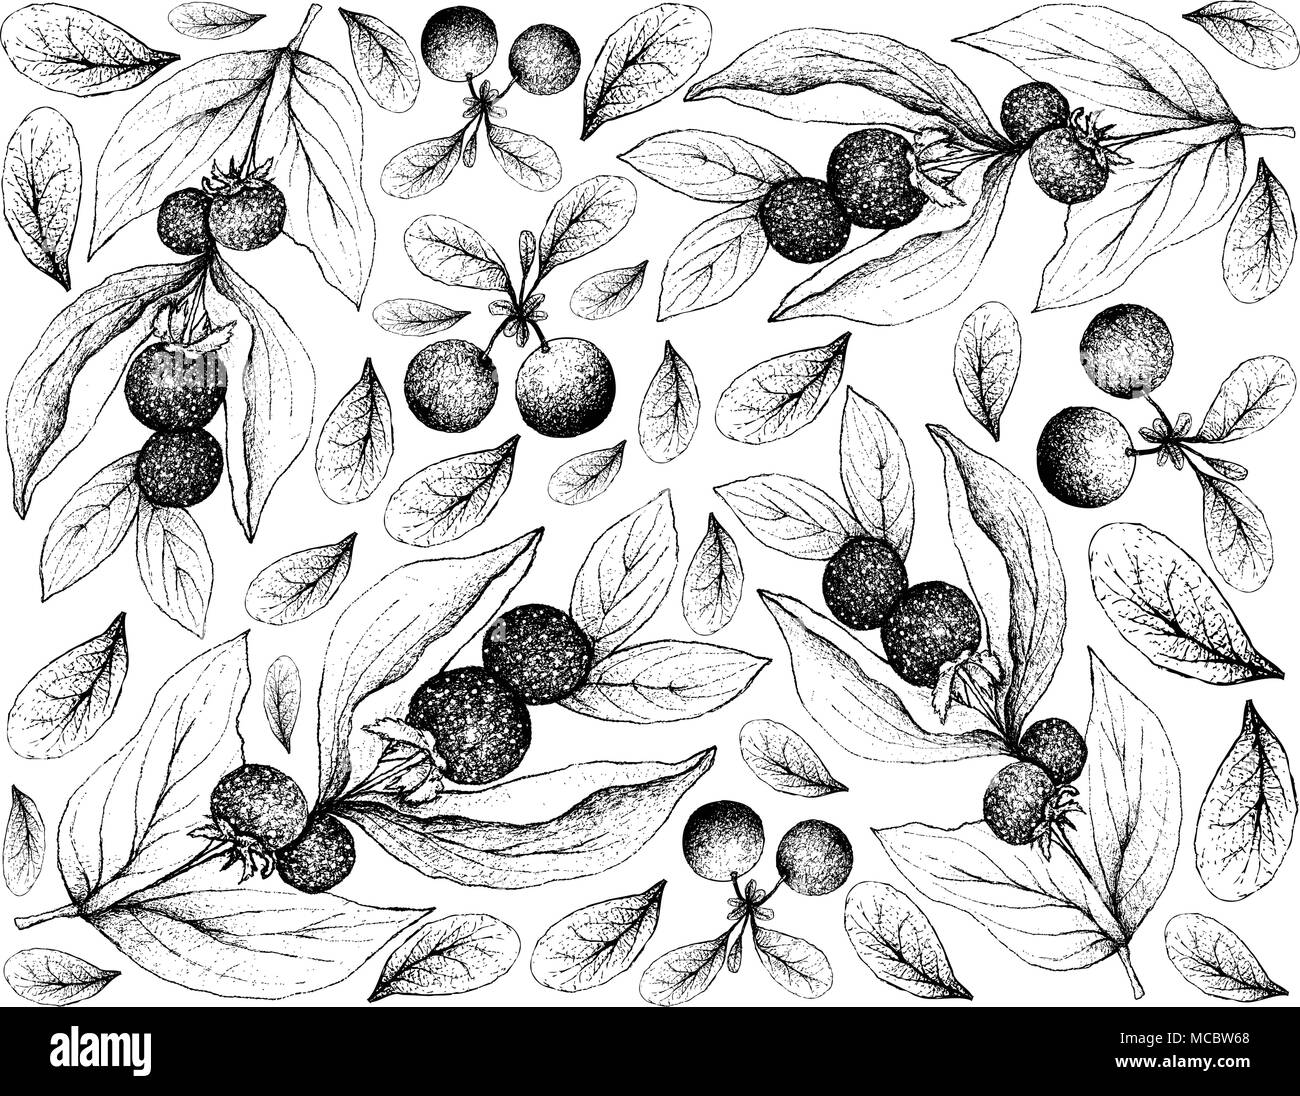 Beerenfrüchte, Illustration Hintergrund von Hand gezeichnete Skizze frischer Ceylon Stachelbeeren und Bog Heidelbeere oder Vaccinium Uiginosum Früchte. Stock Vektor